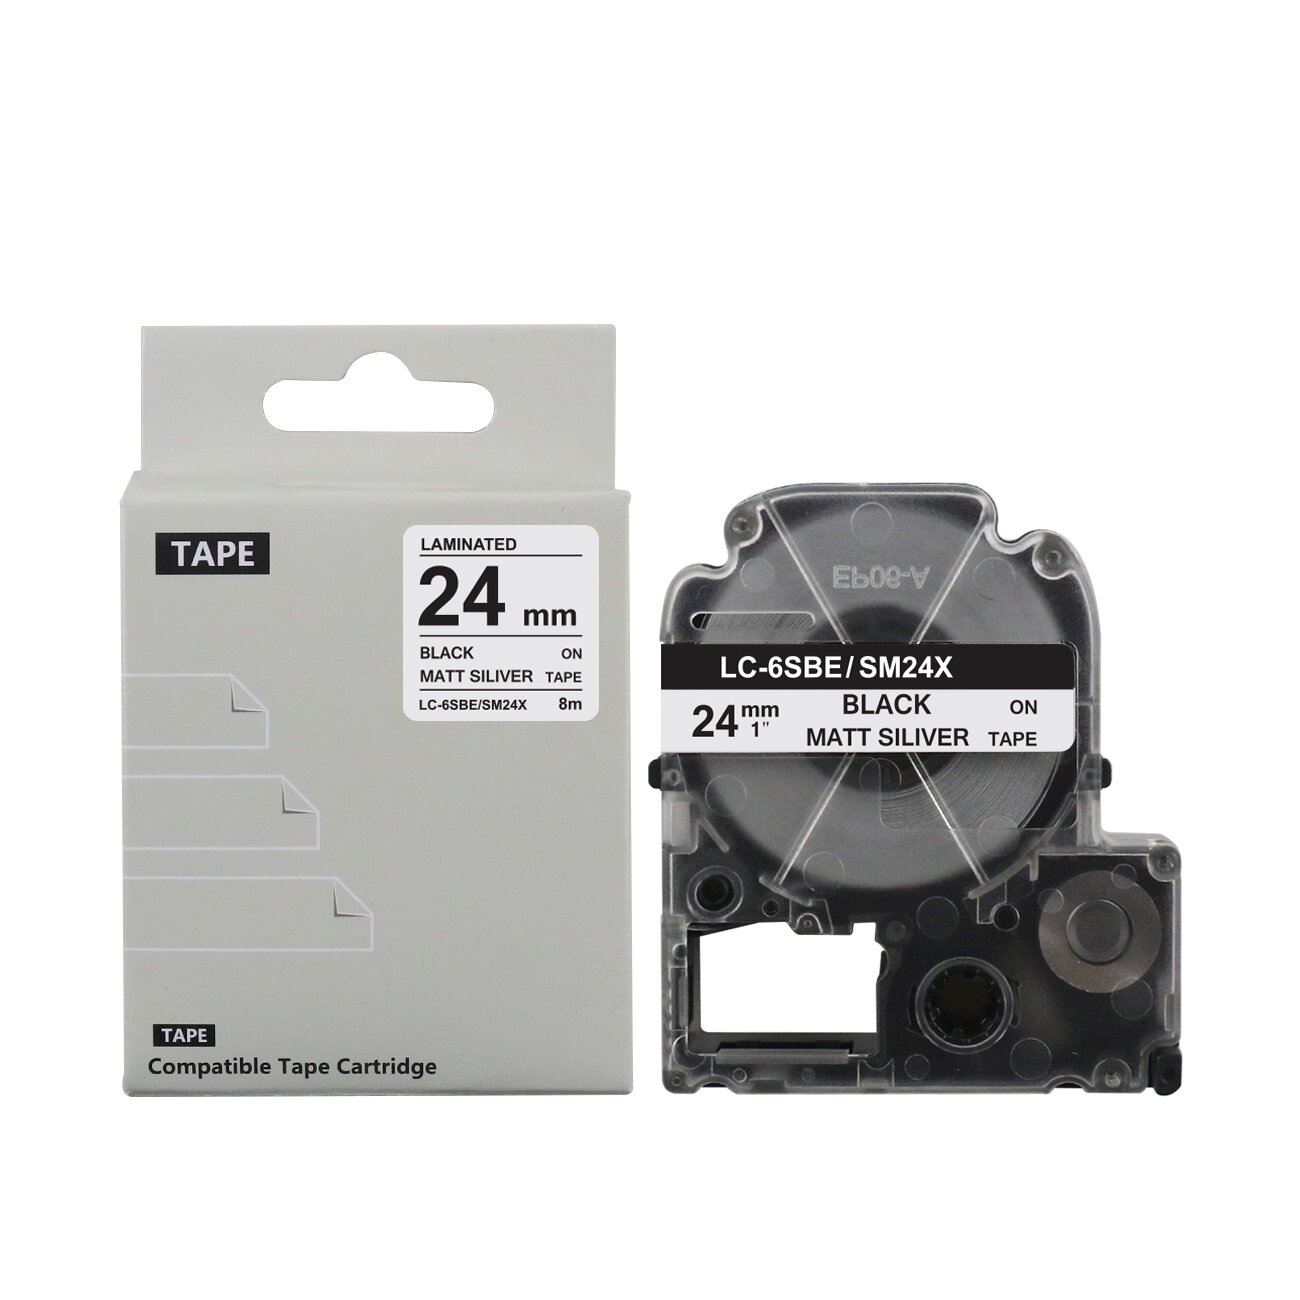 Картридж BYZ LC-6SBE/SM24X с термолентой для принтеров Epson, 24 мм, 8 м, черный текст на матовой серебристой ленте